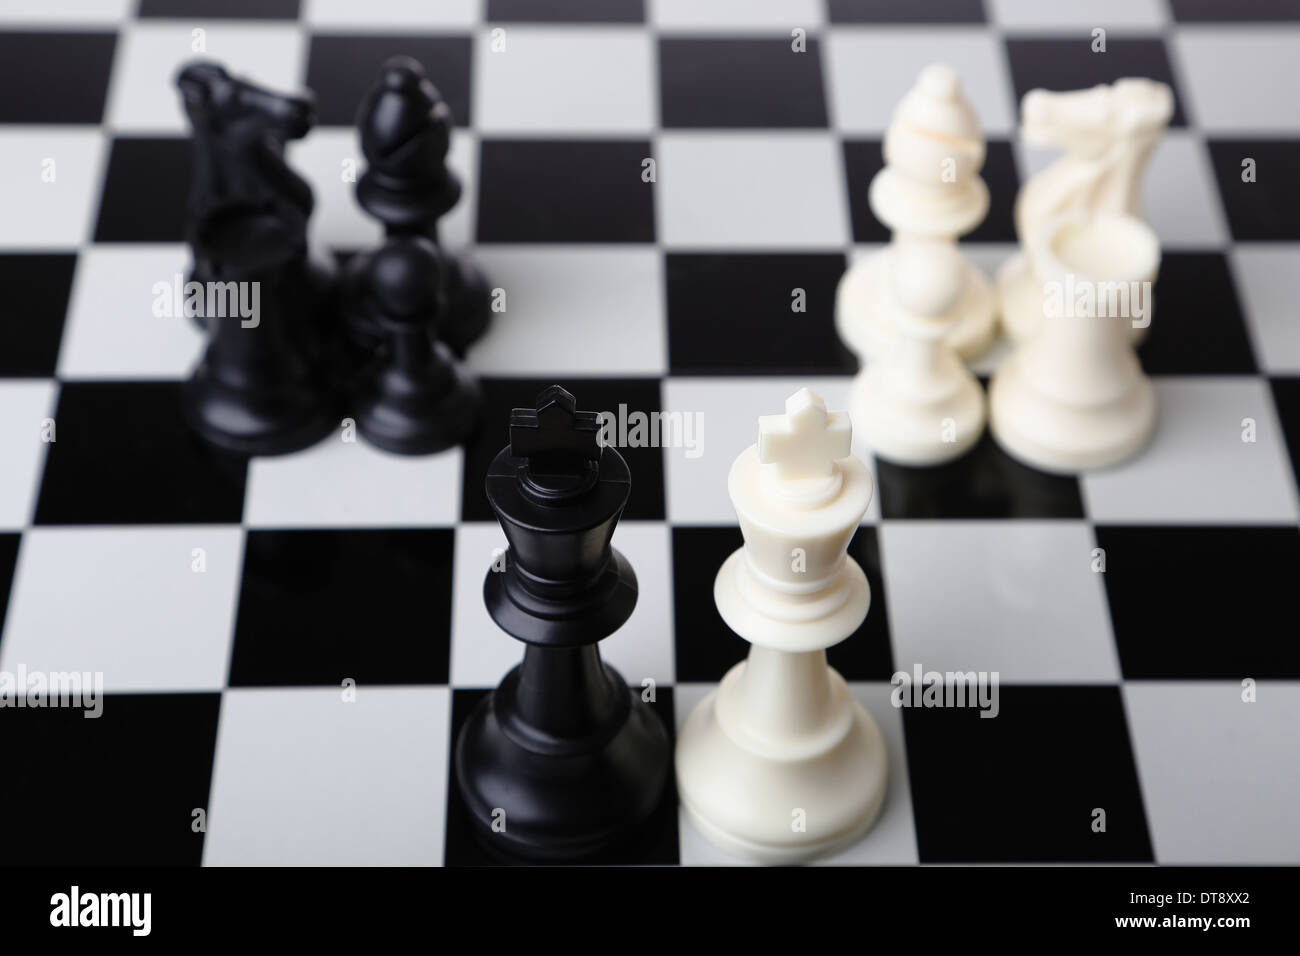 Blanco y negro reyes de ajedrez en tableros de ajedrez Foto de stock